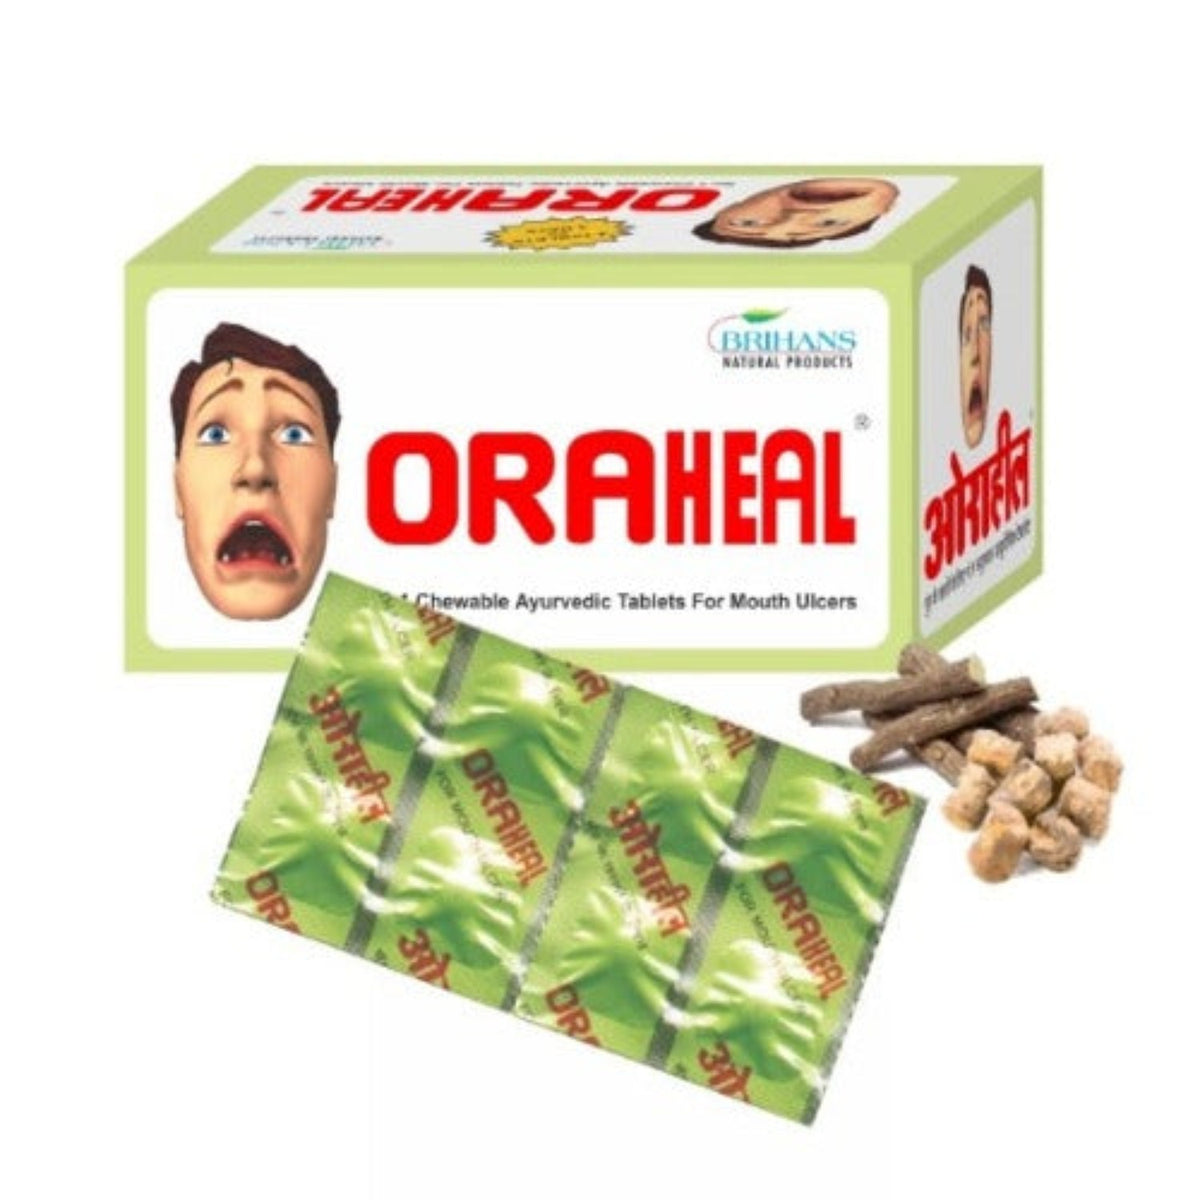 Brihans Natural Ayurvedic Oraheal Mouth Ulcer 8 X 20 Tablets